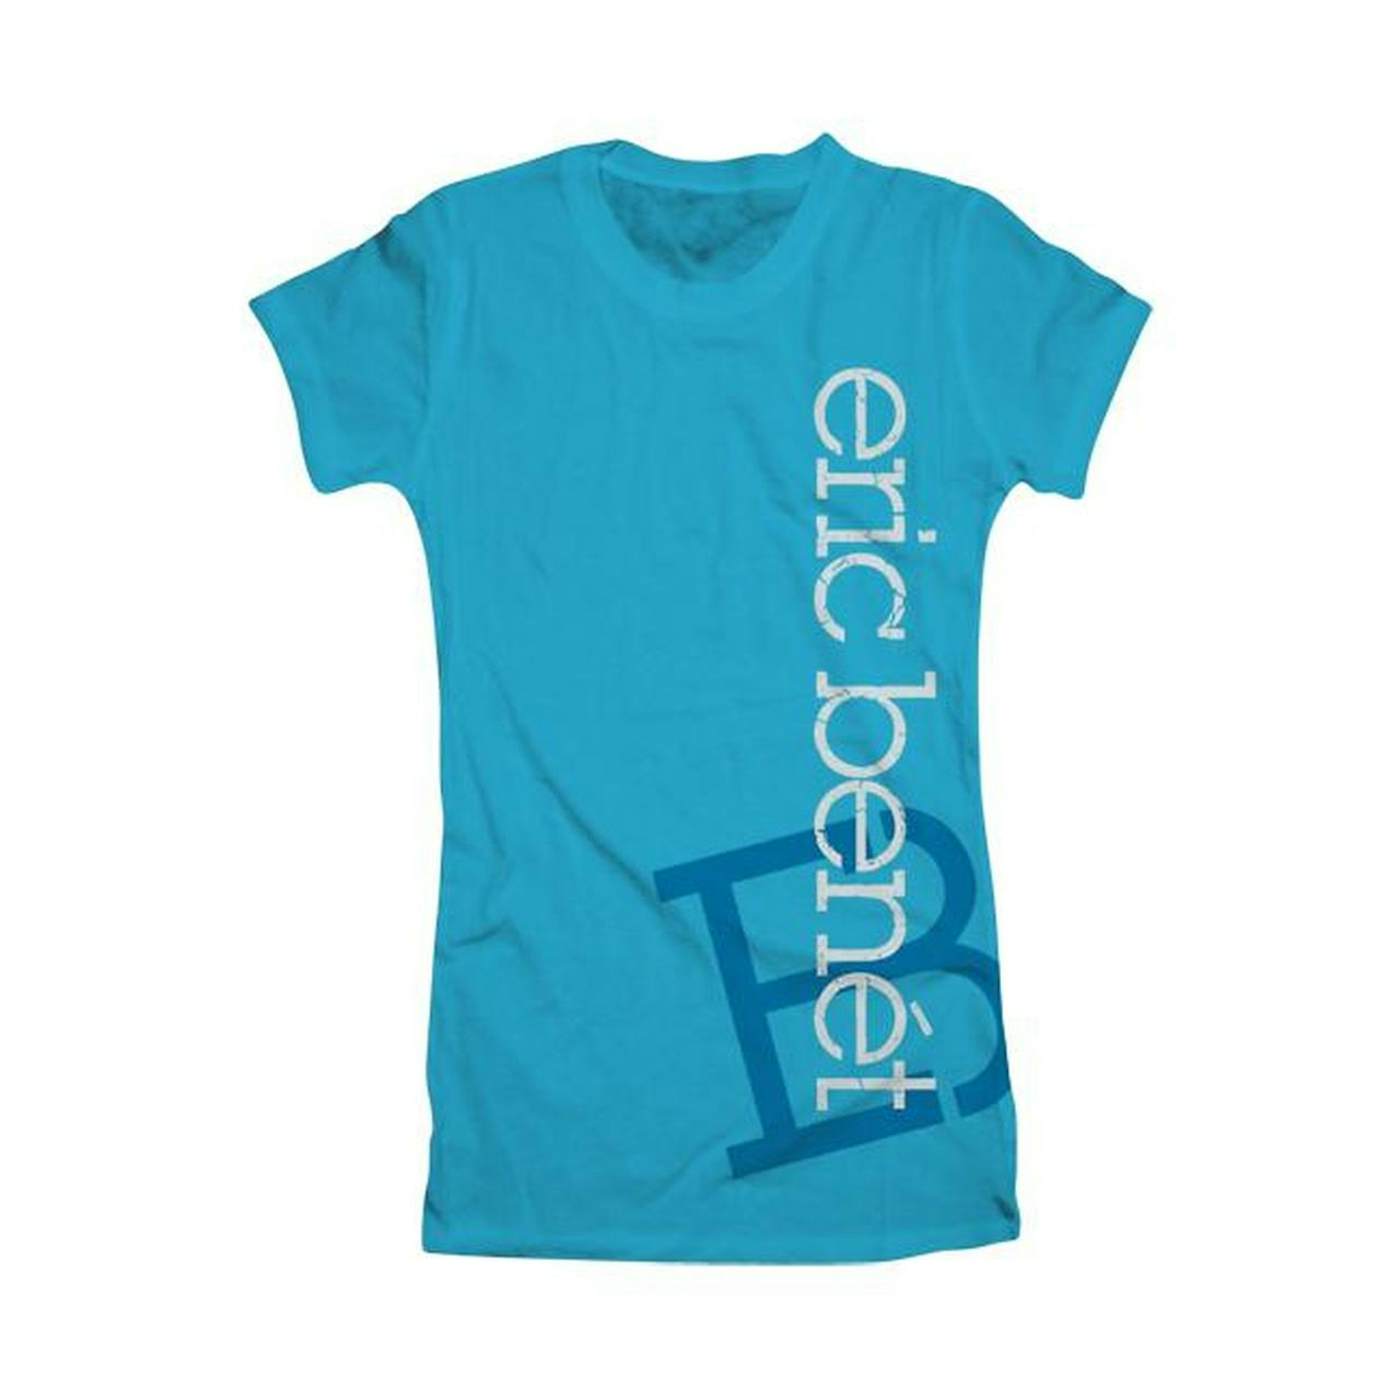 Eric Benét "Vertical EB" Women's T-Shirt